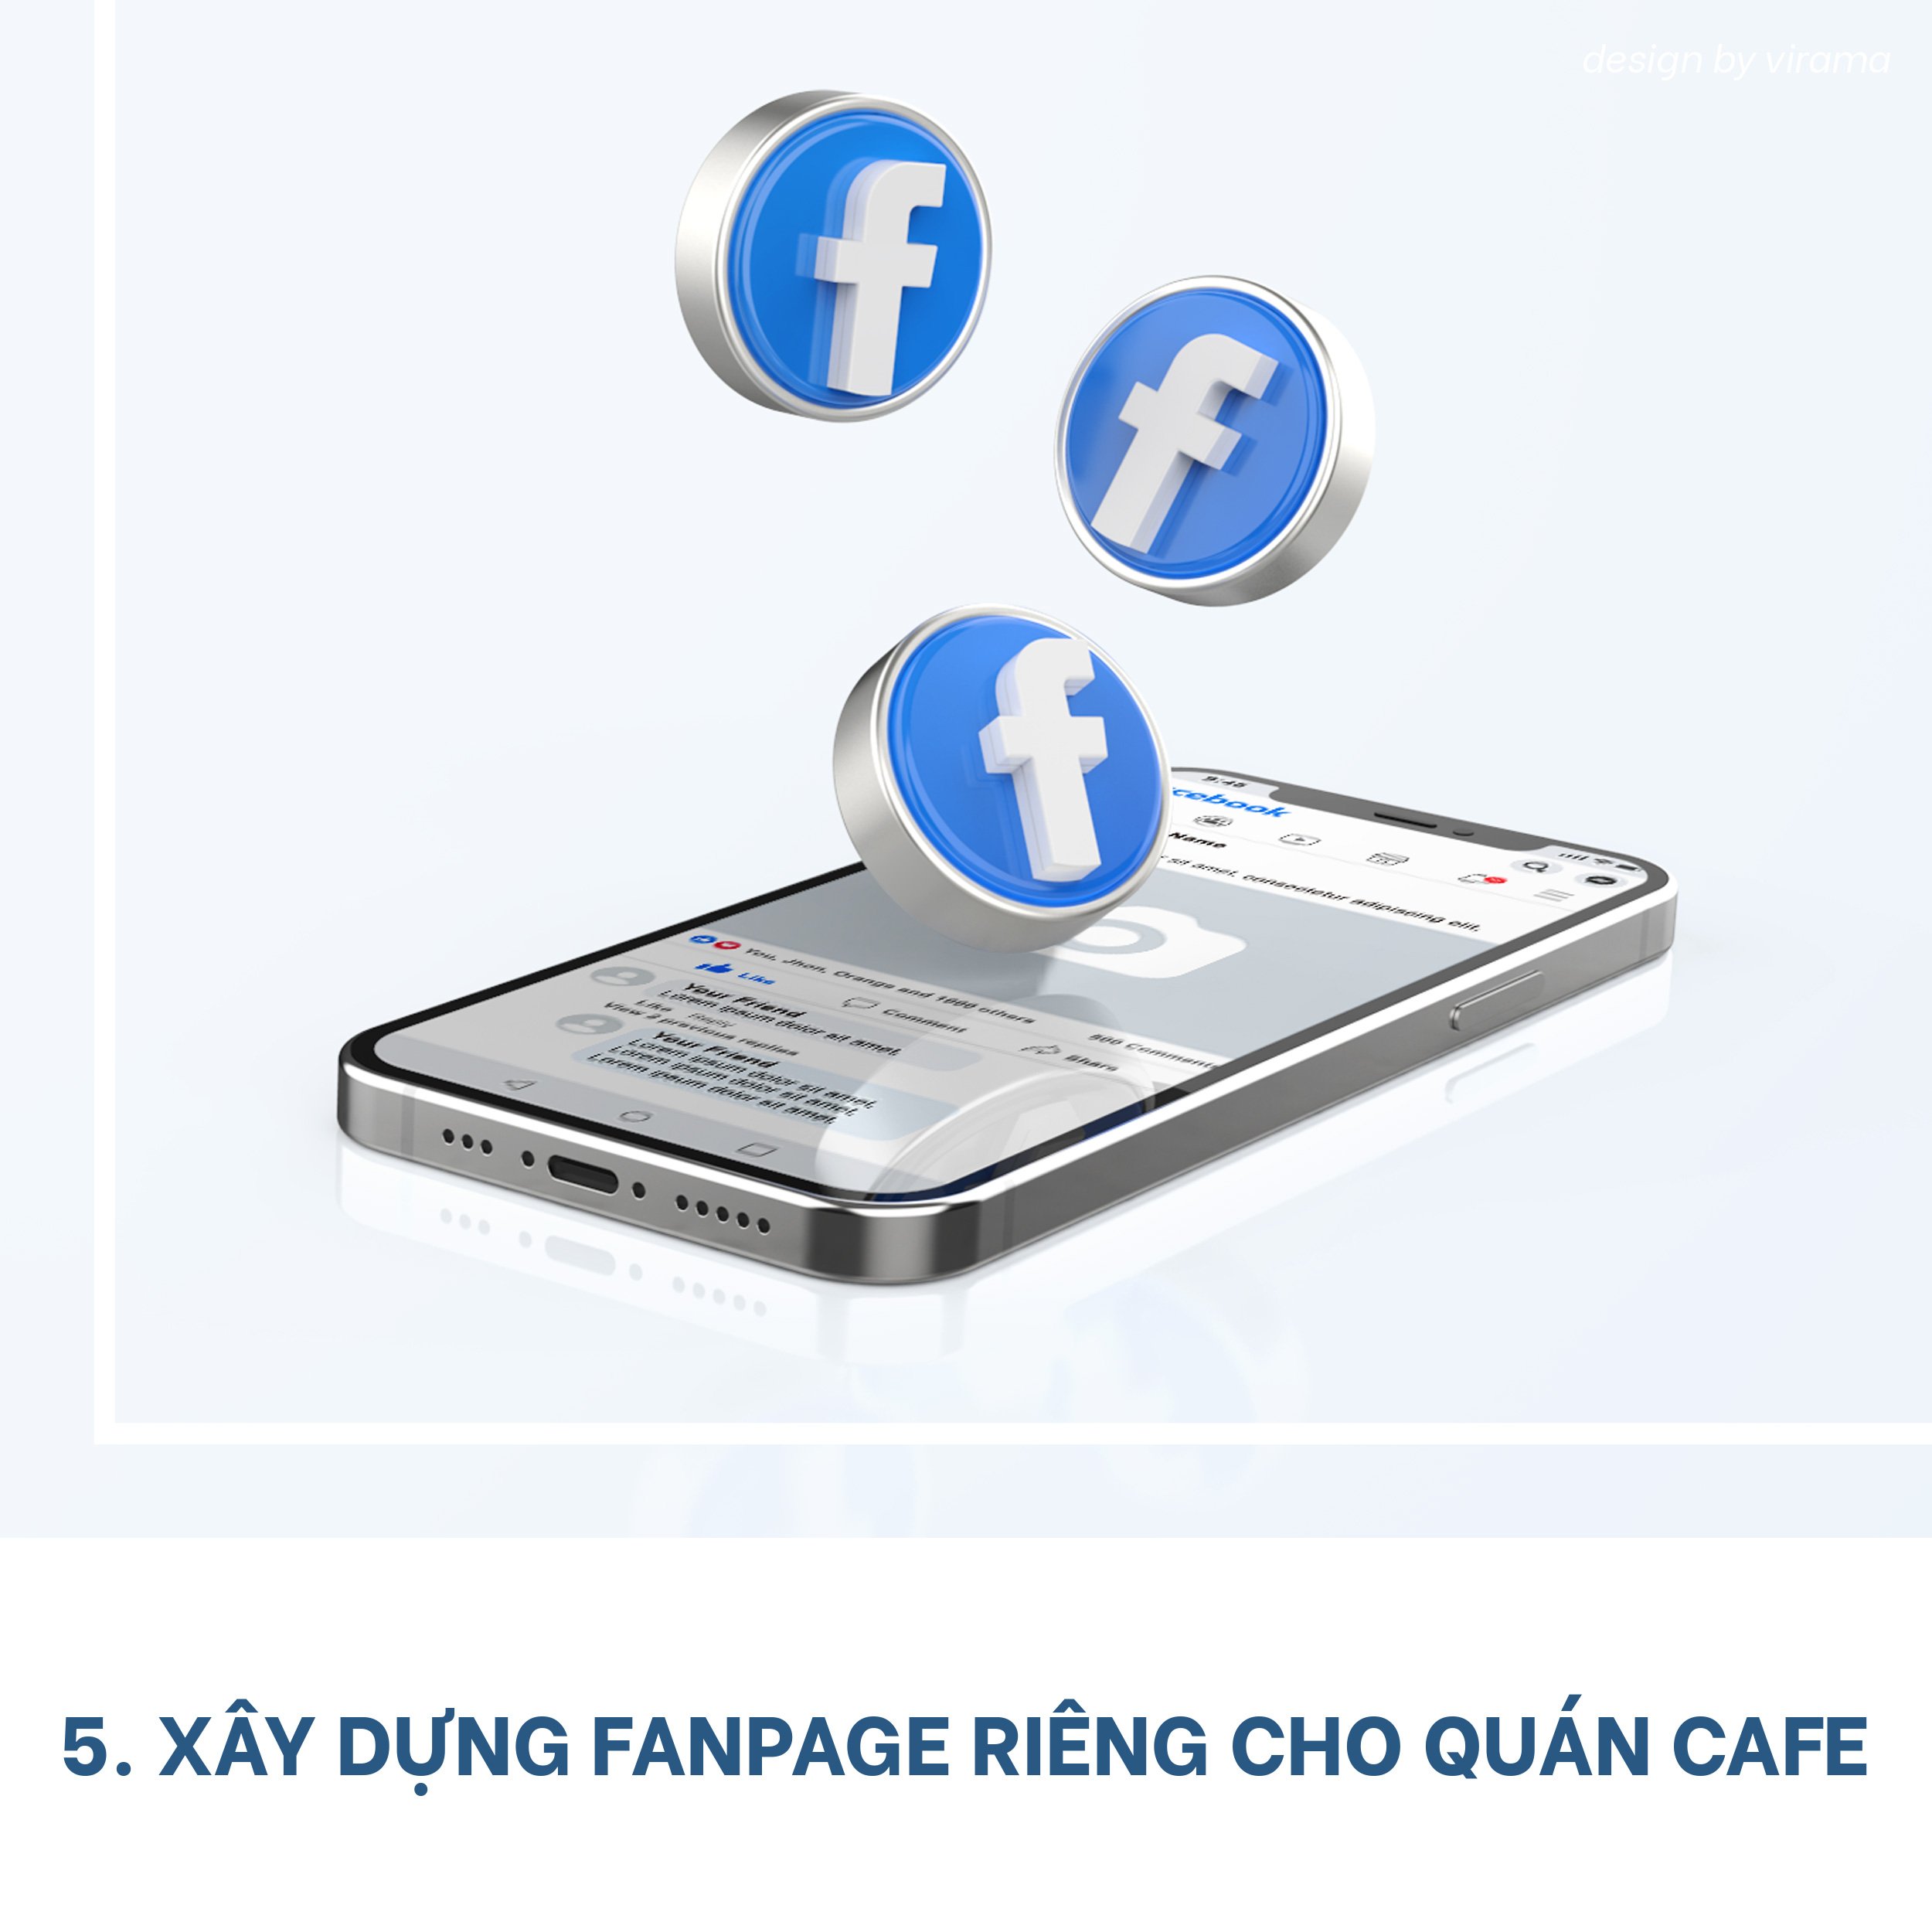 marketing-cho-quan-cafe-6